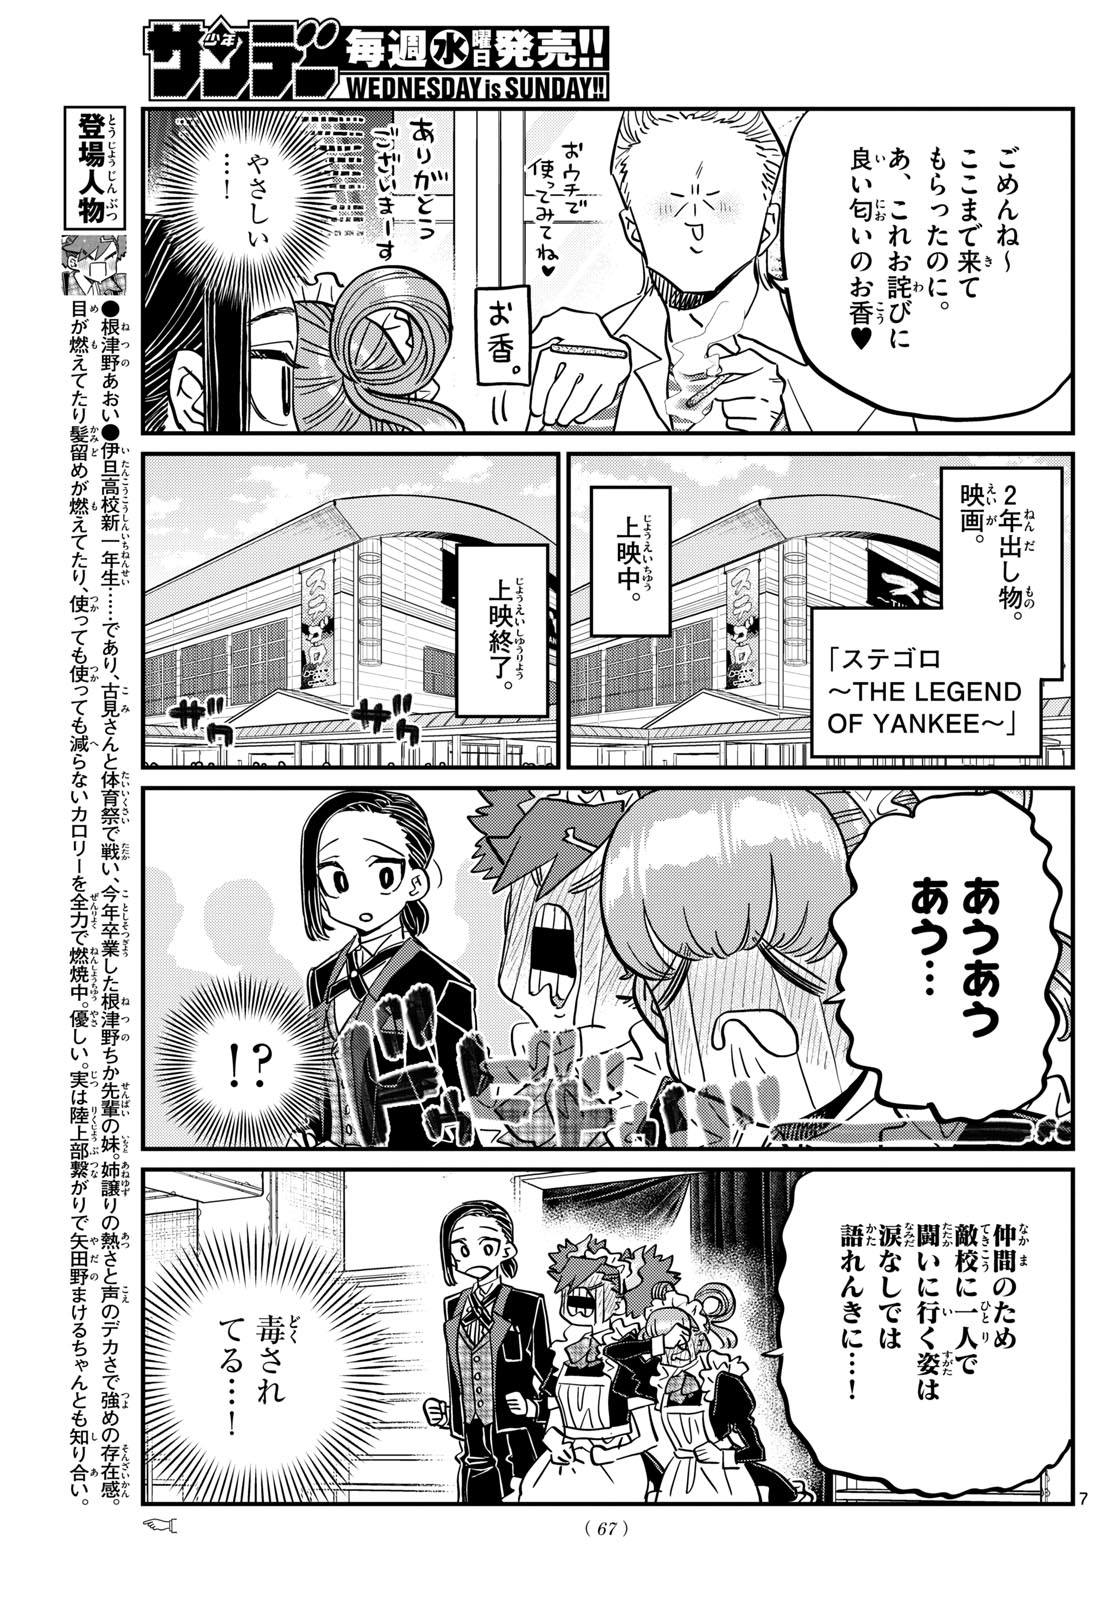 Komi-san wa Komyushou Desu - Chapter 451 - Page 7